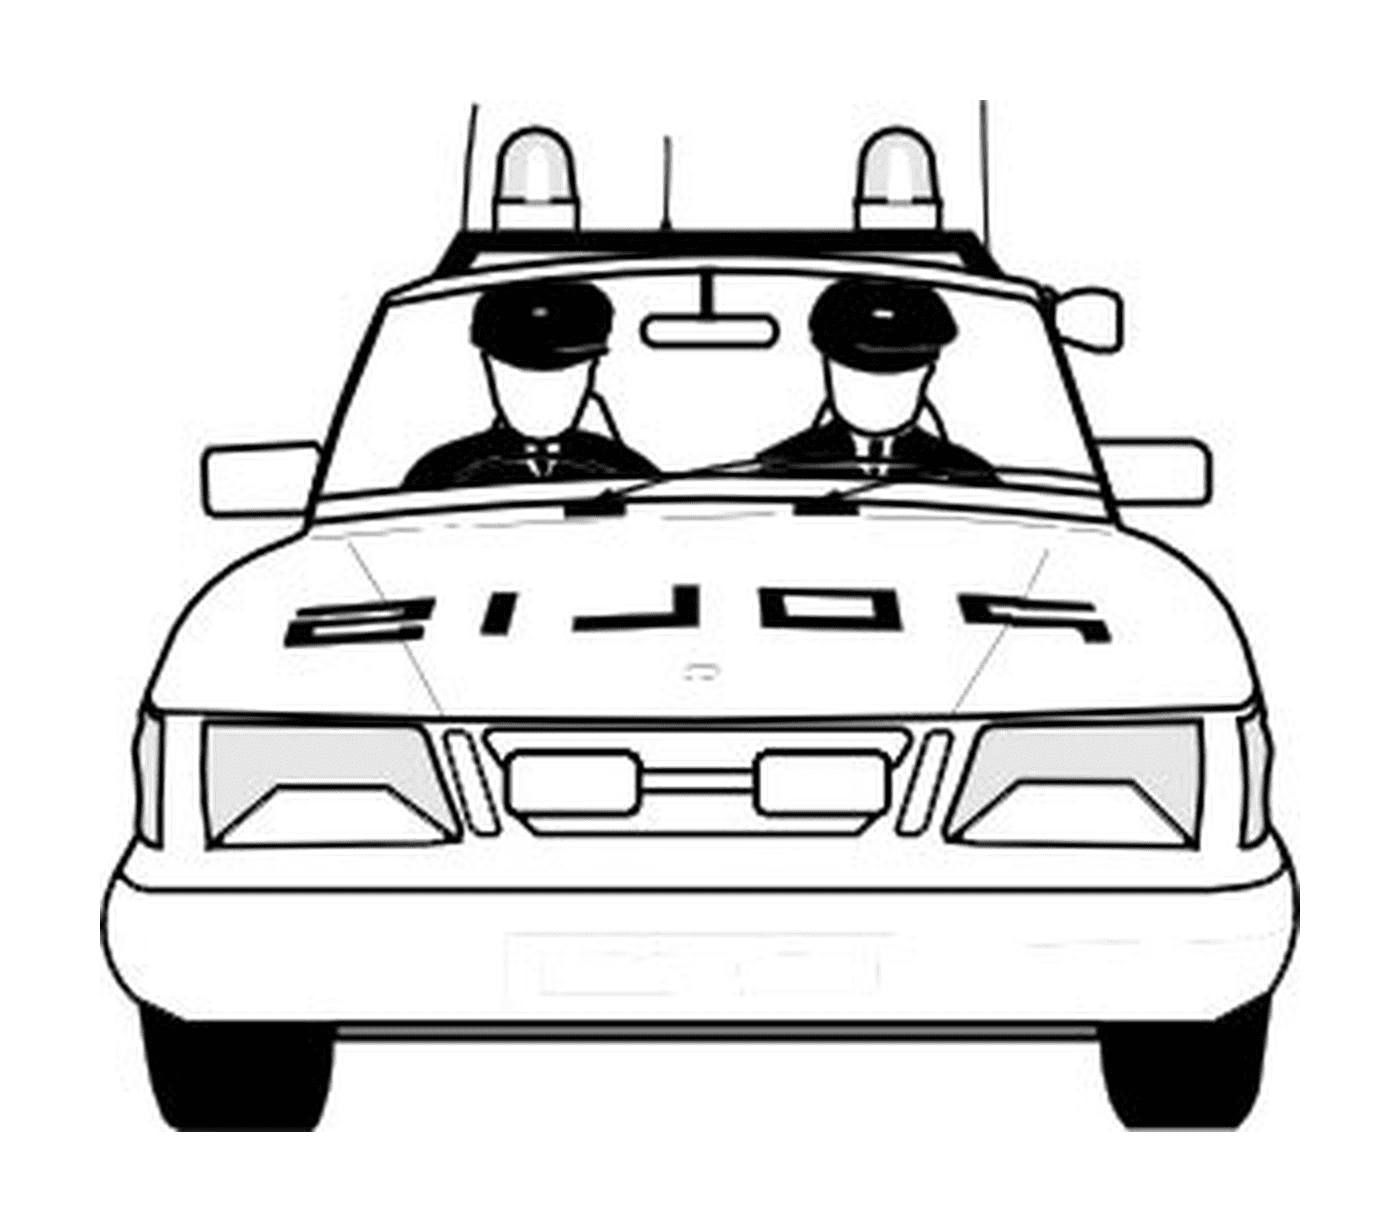  Polizeiwagen, zwei Offiziere hinten 